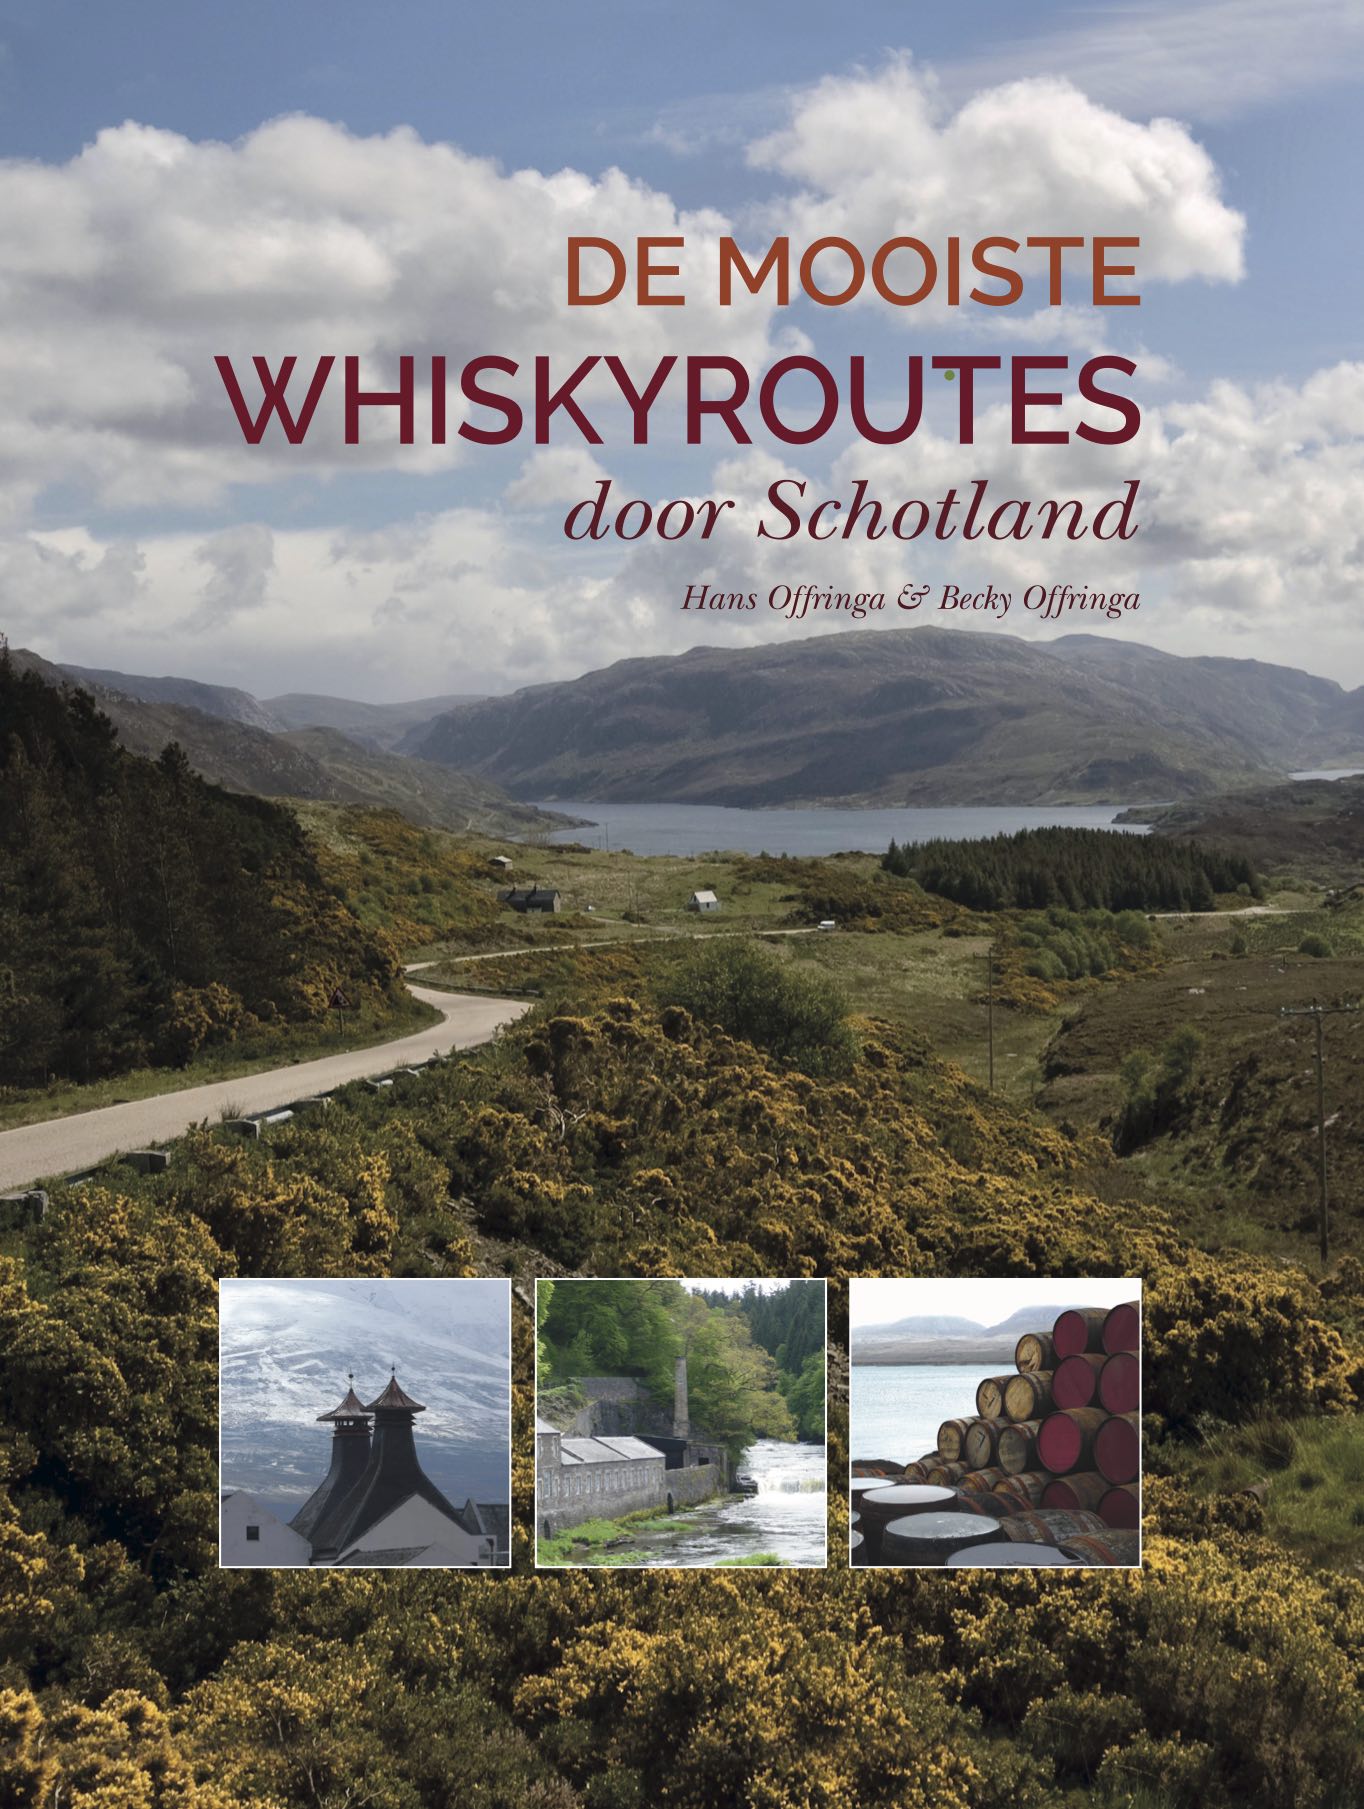 De Mooiste Whiskyroutes door Schotland cover